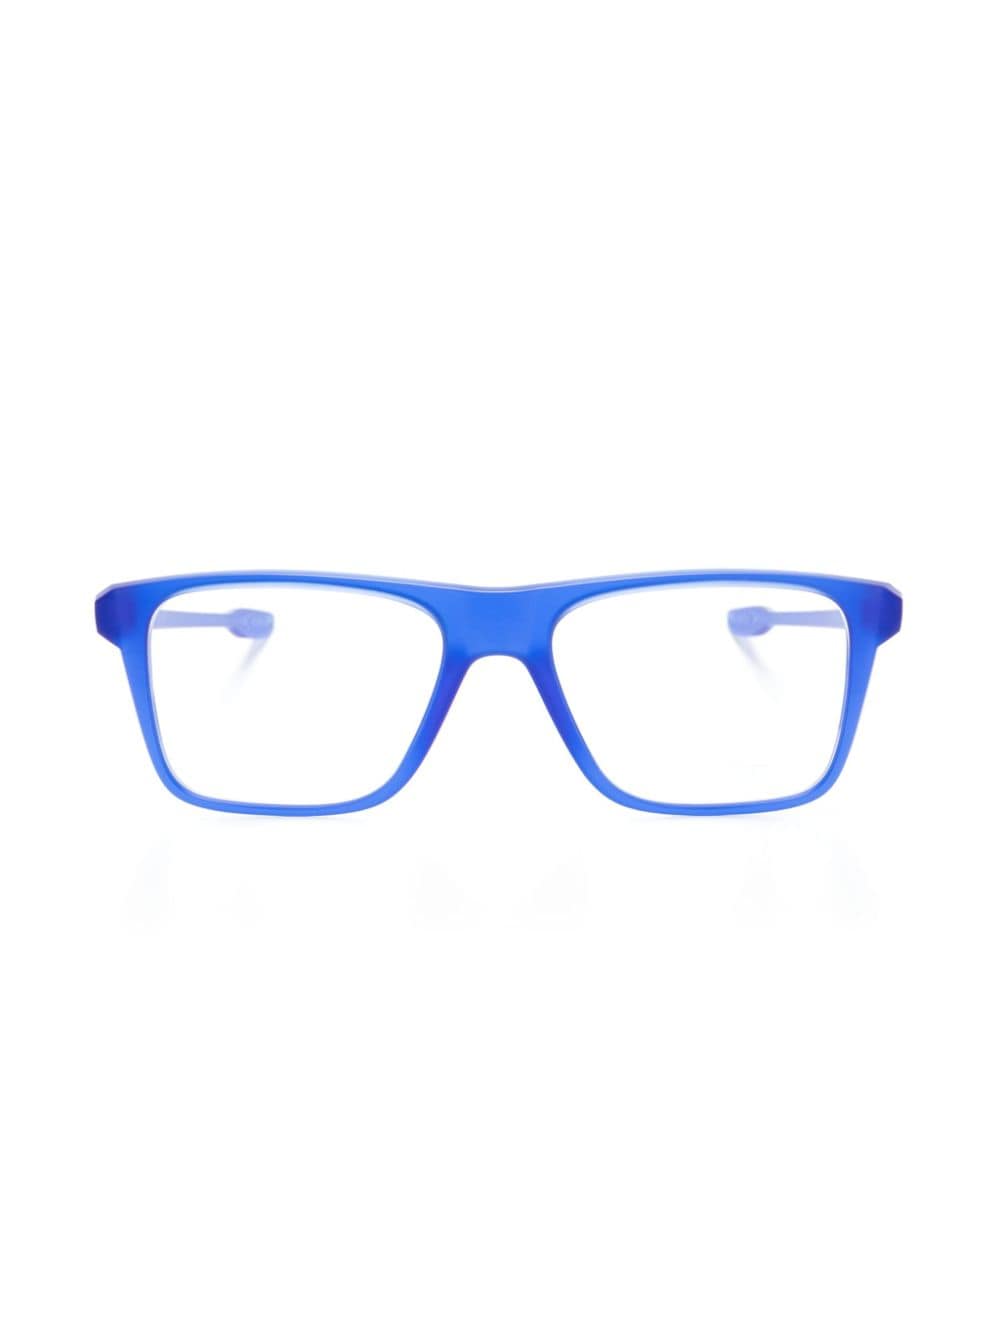 Oakley Matte Sea Brille mit eckigem Gestell - Blau von Oakley